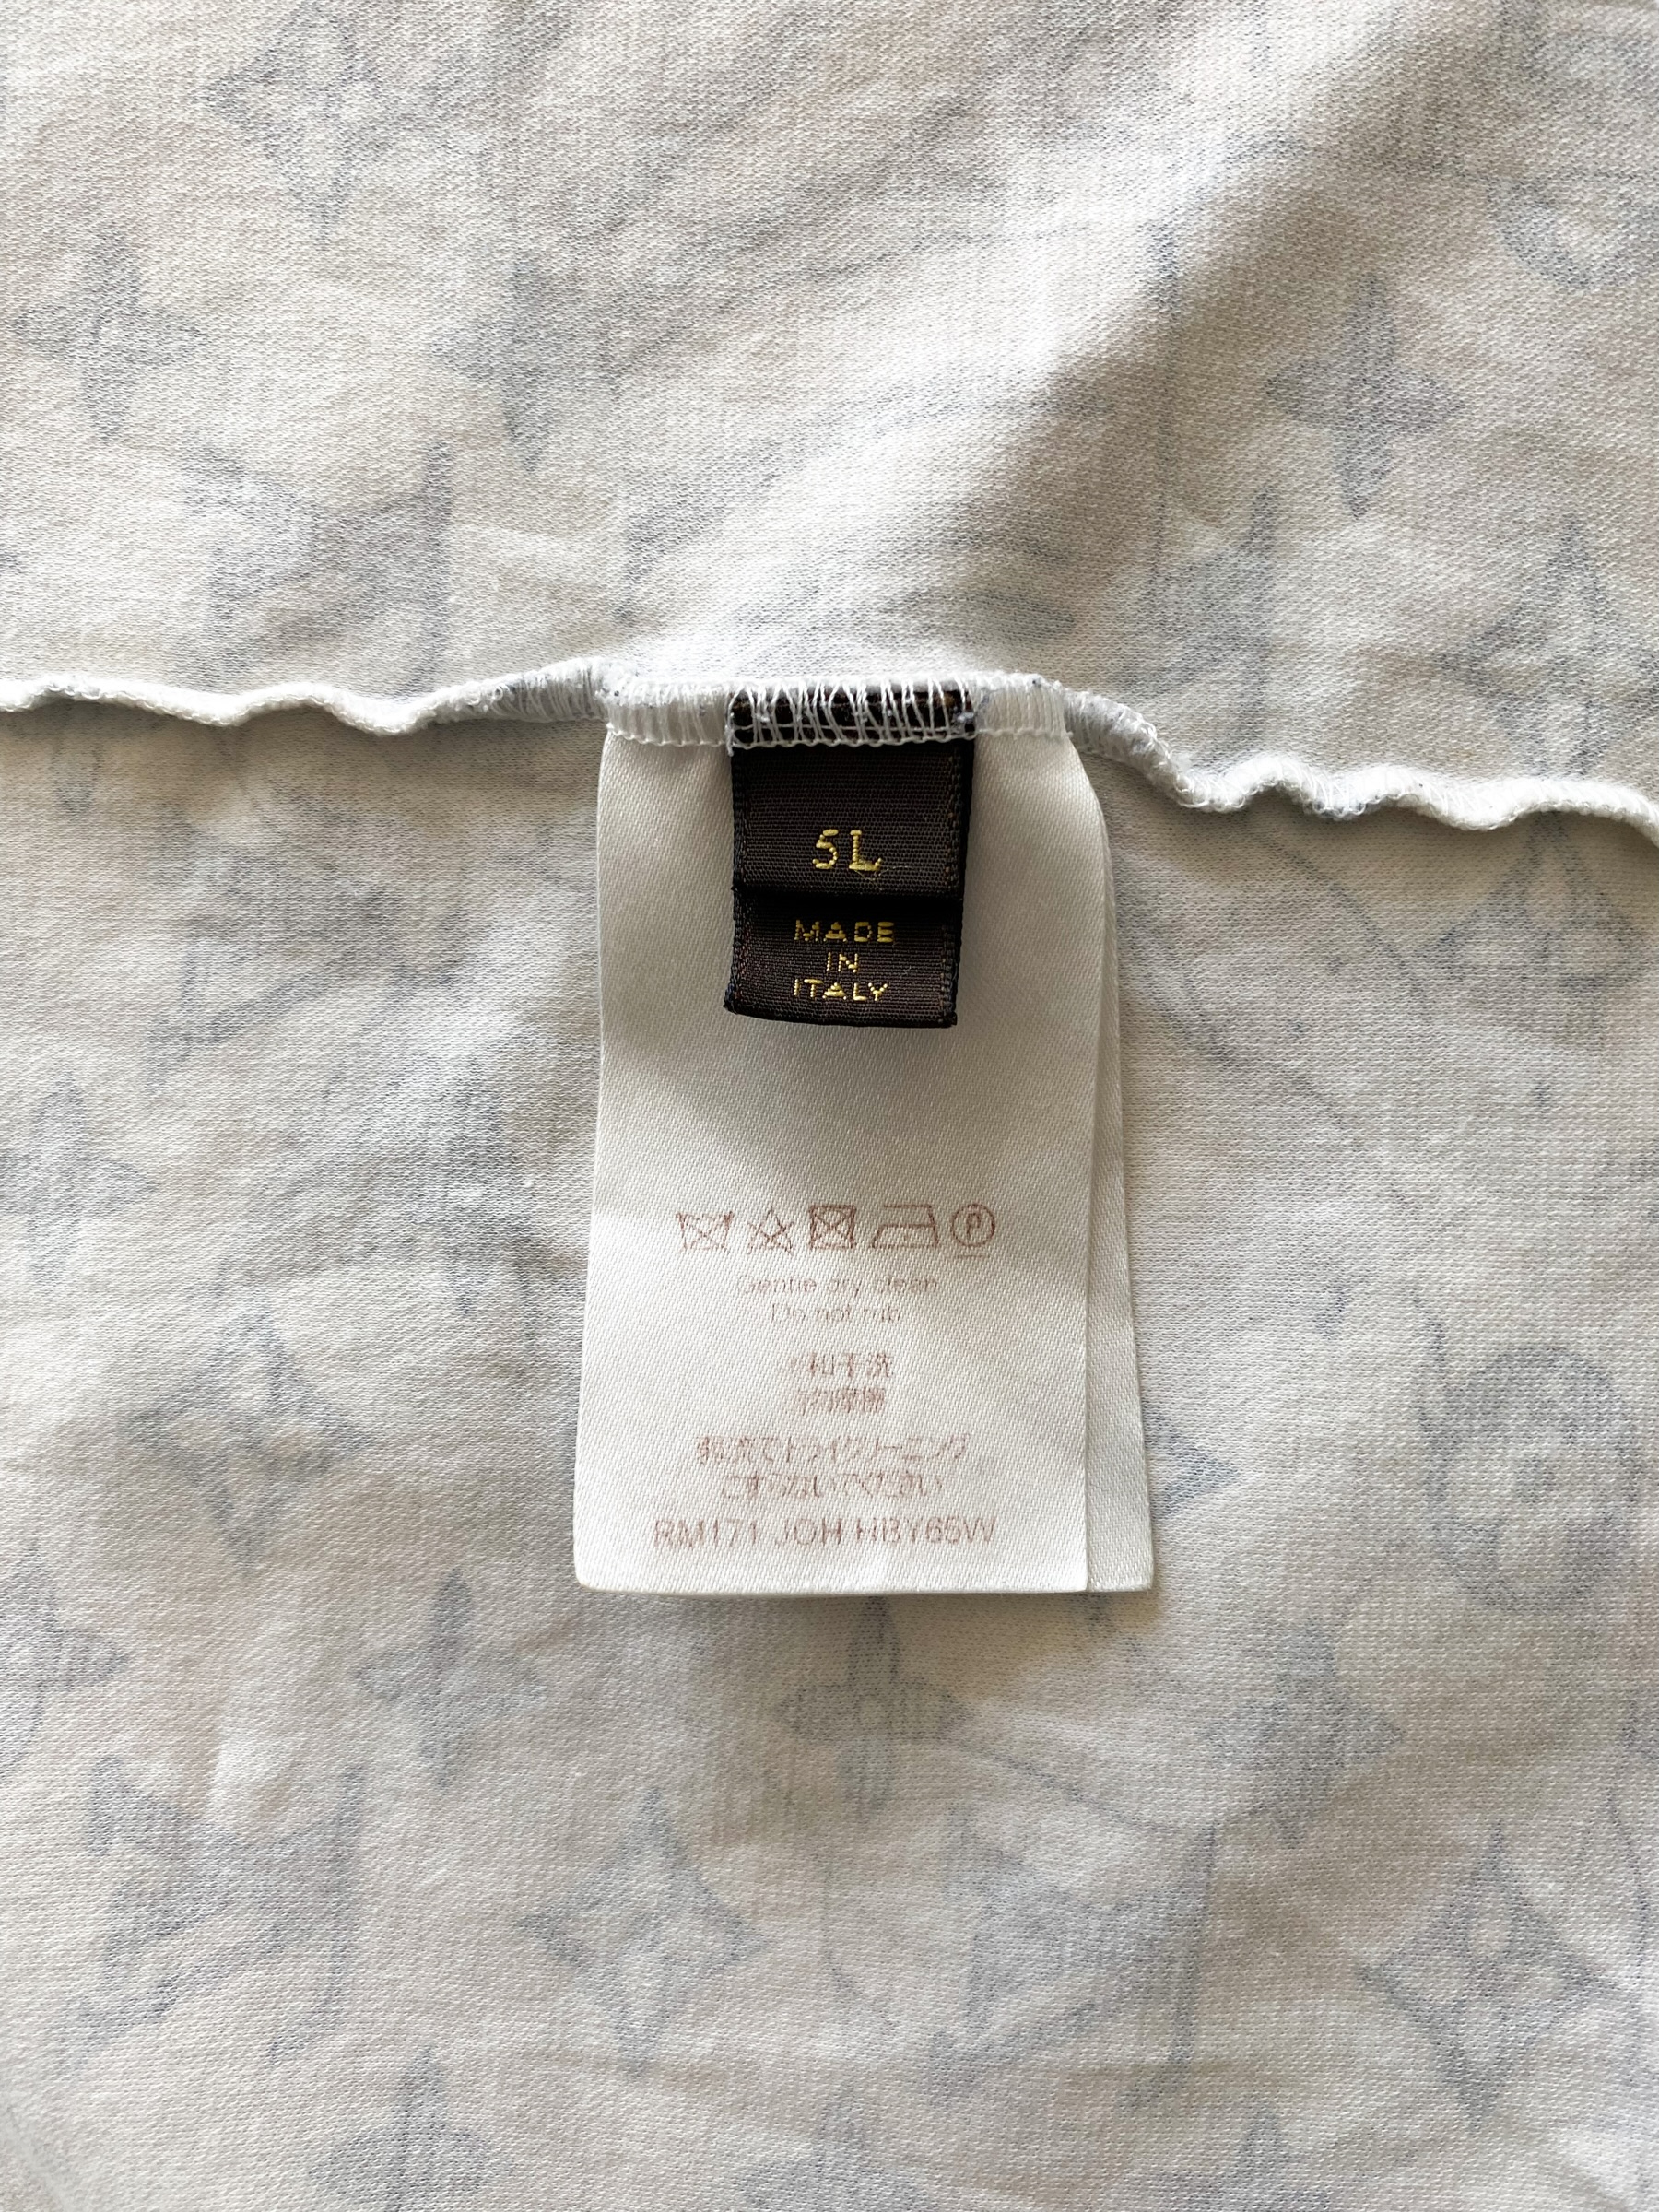 FIND] Louis Vuitton x Chapman Brothers Short Sleeve Silk Shirt : r